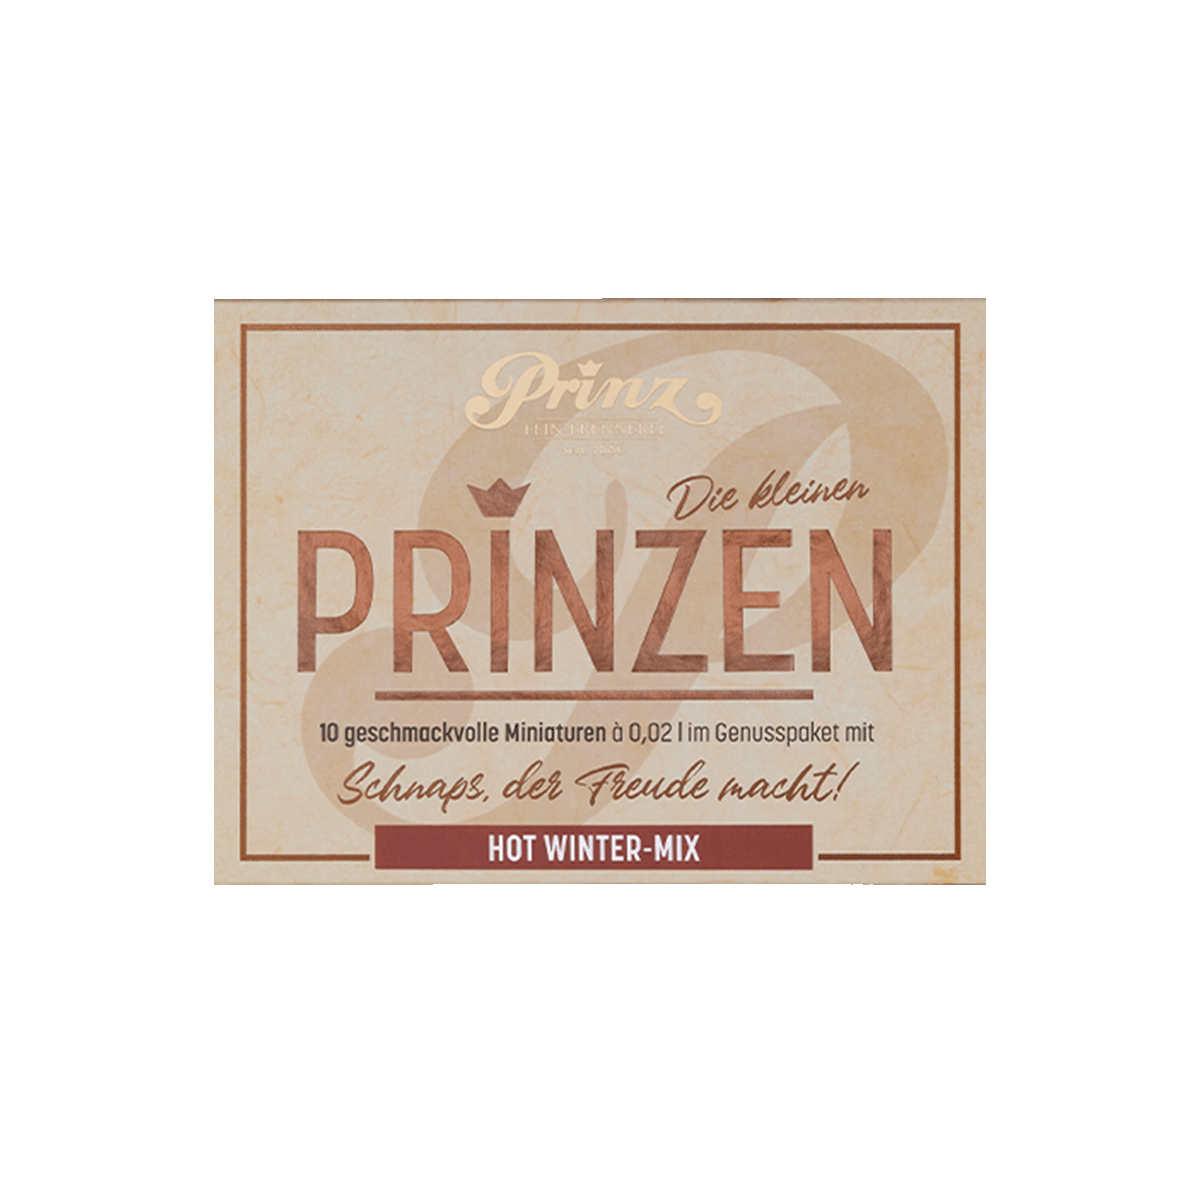 Prinz Genusspaket - Hot Winter Mix von Prinz Schnaps Feinbrennerei